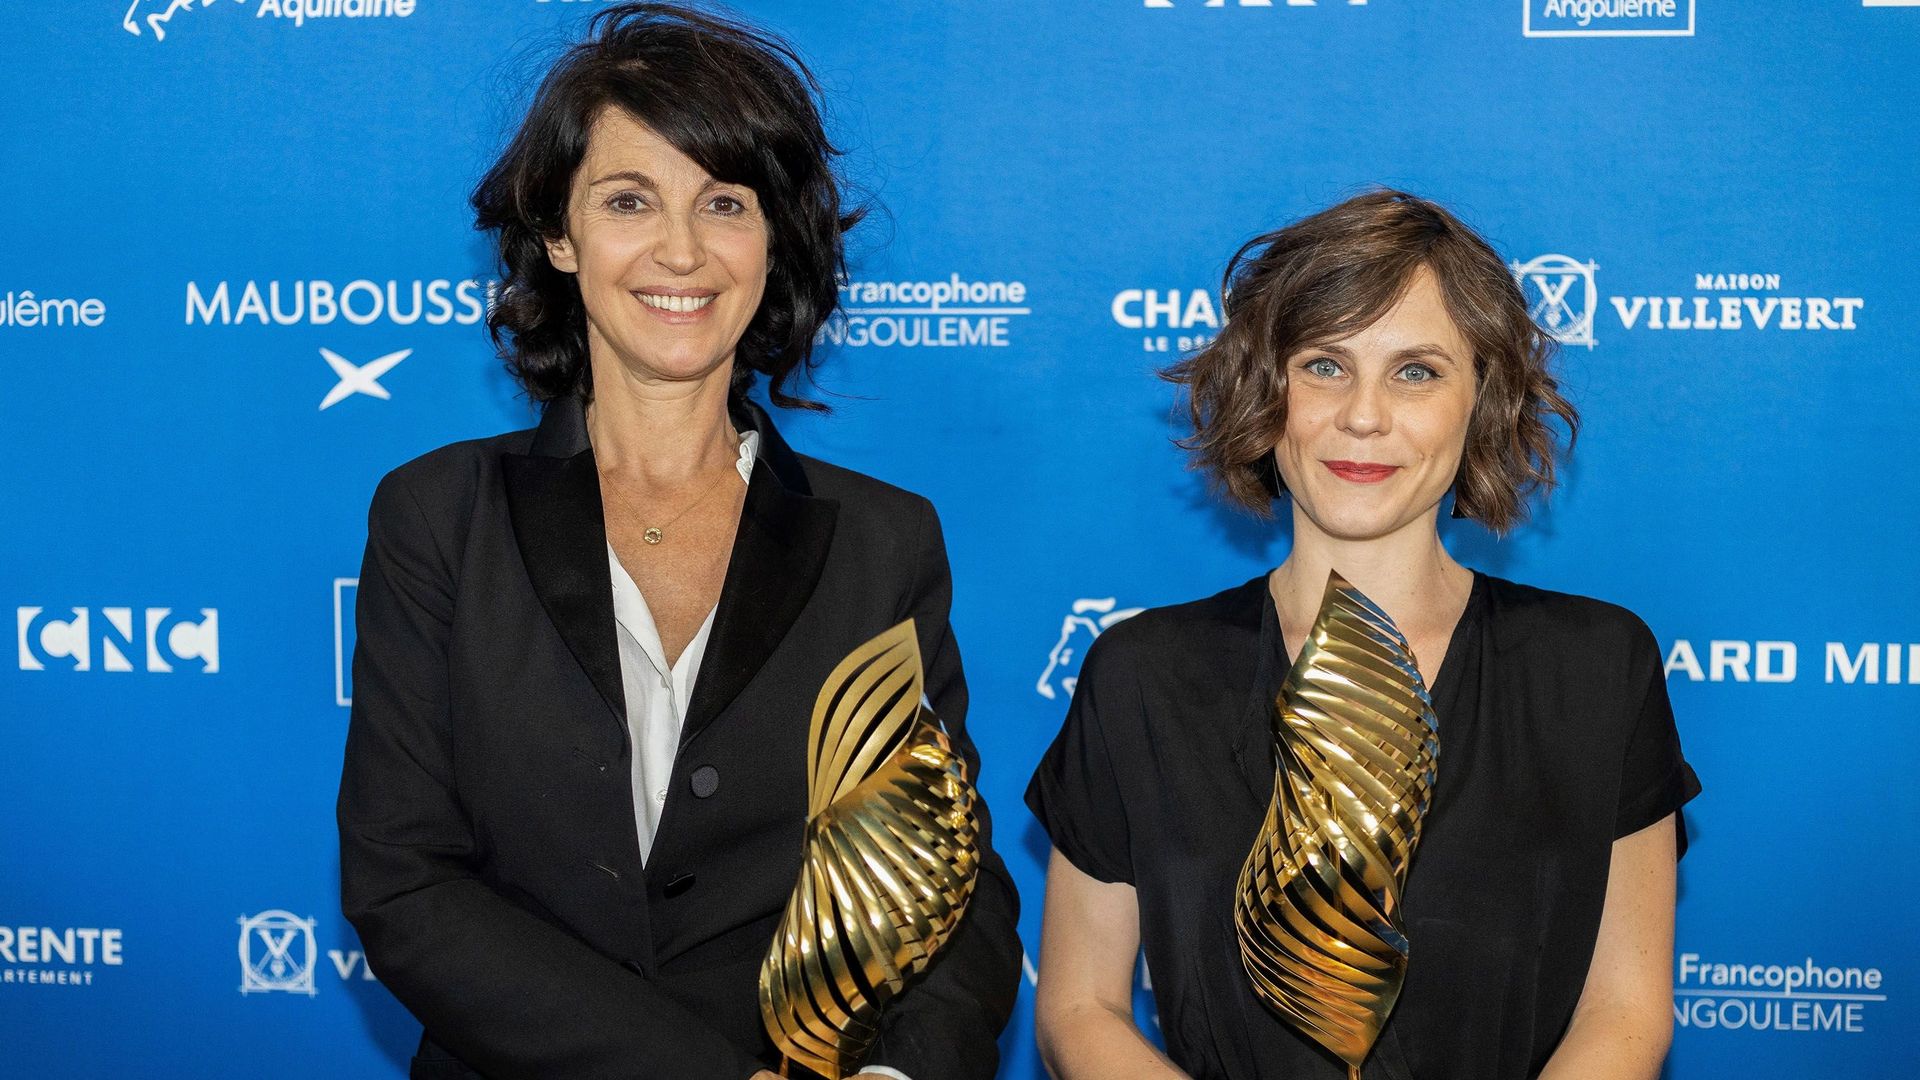 Les réalisatrices Zabou Breitman (à gauche) et Eléa Gobbe-Mévellec (à droite) ont remporté le trophée "Valois de Diamant", au Festival du film d'Angoulême, pour leur long métrage "Les Hirondelles de Kaboul".